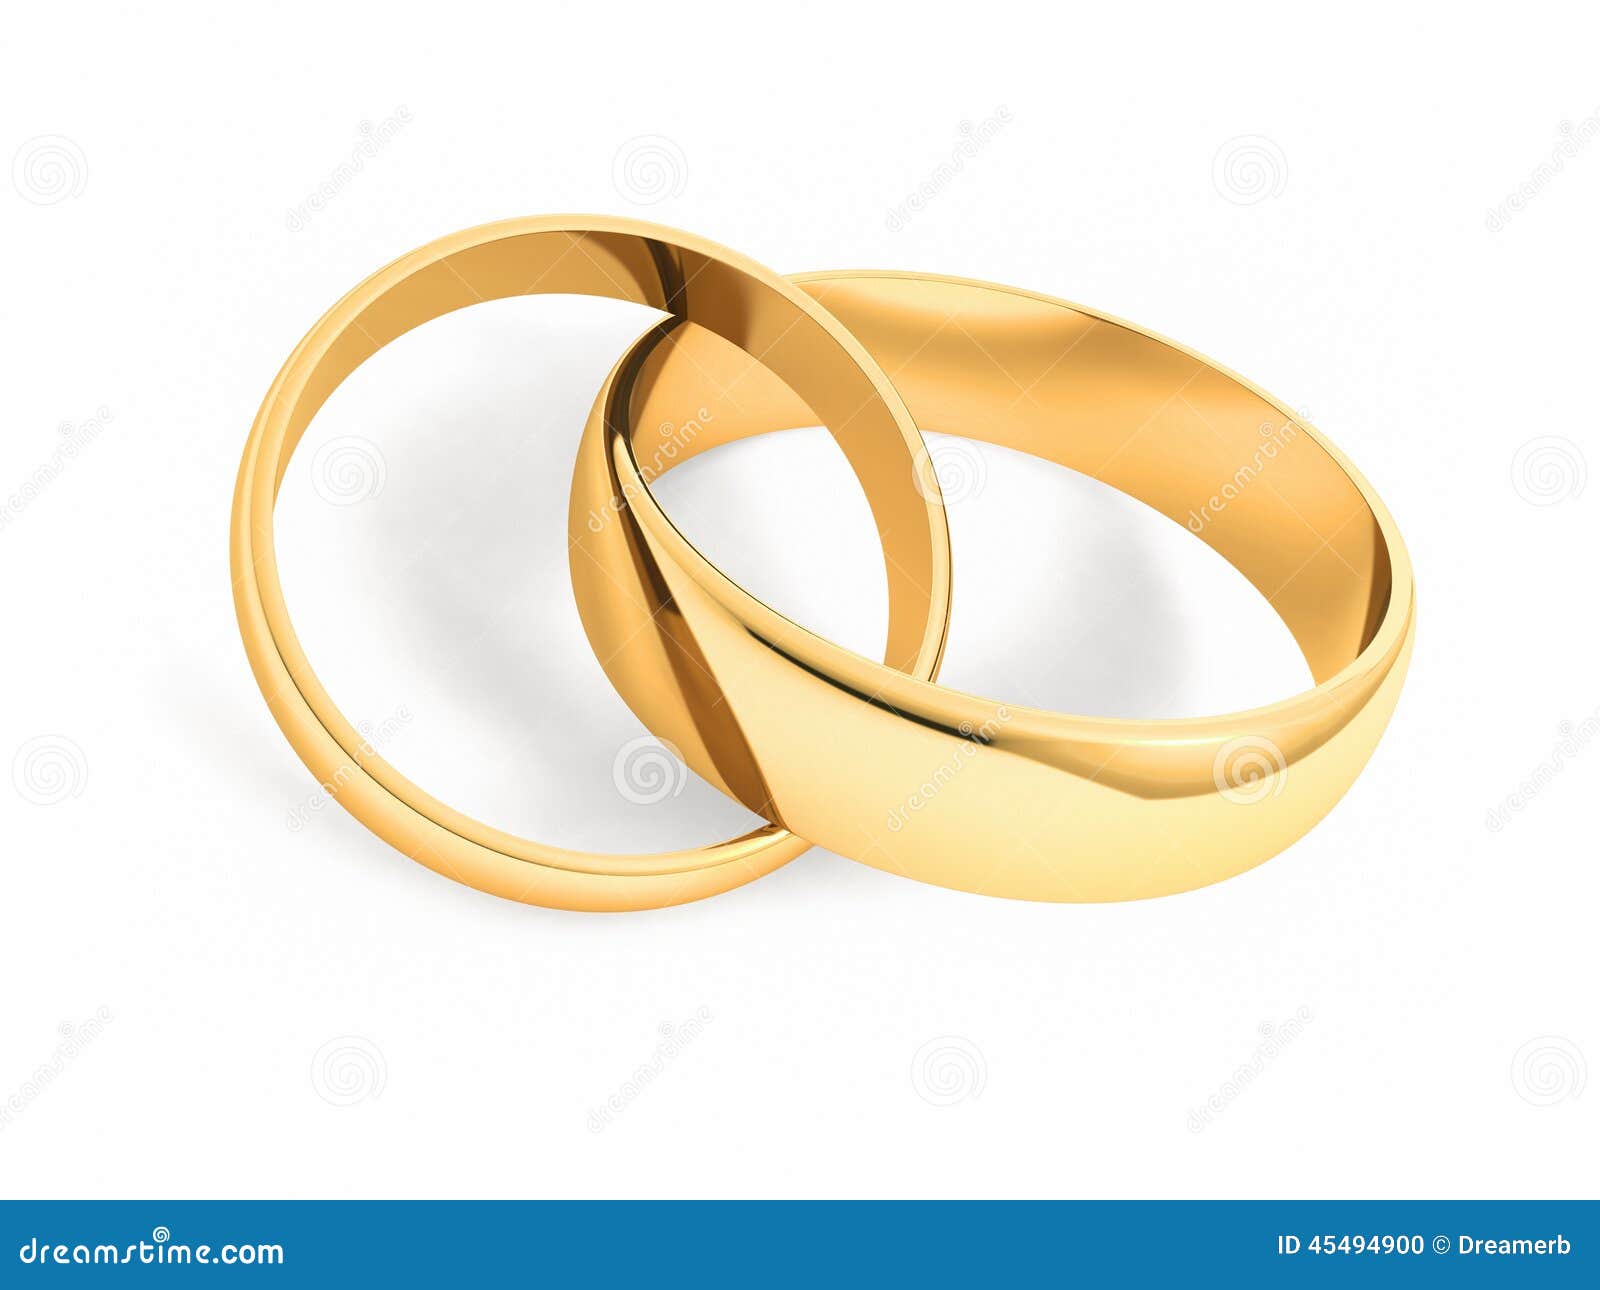  Wedding  rings  stock illustration Image of background  